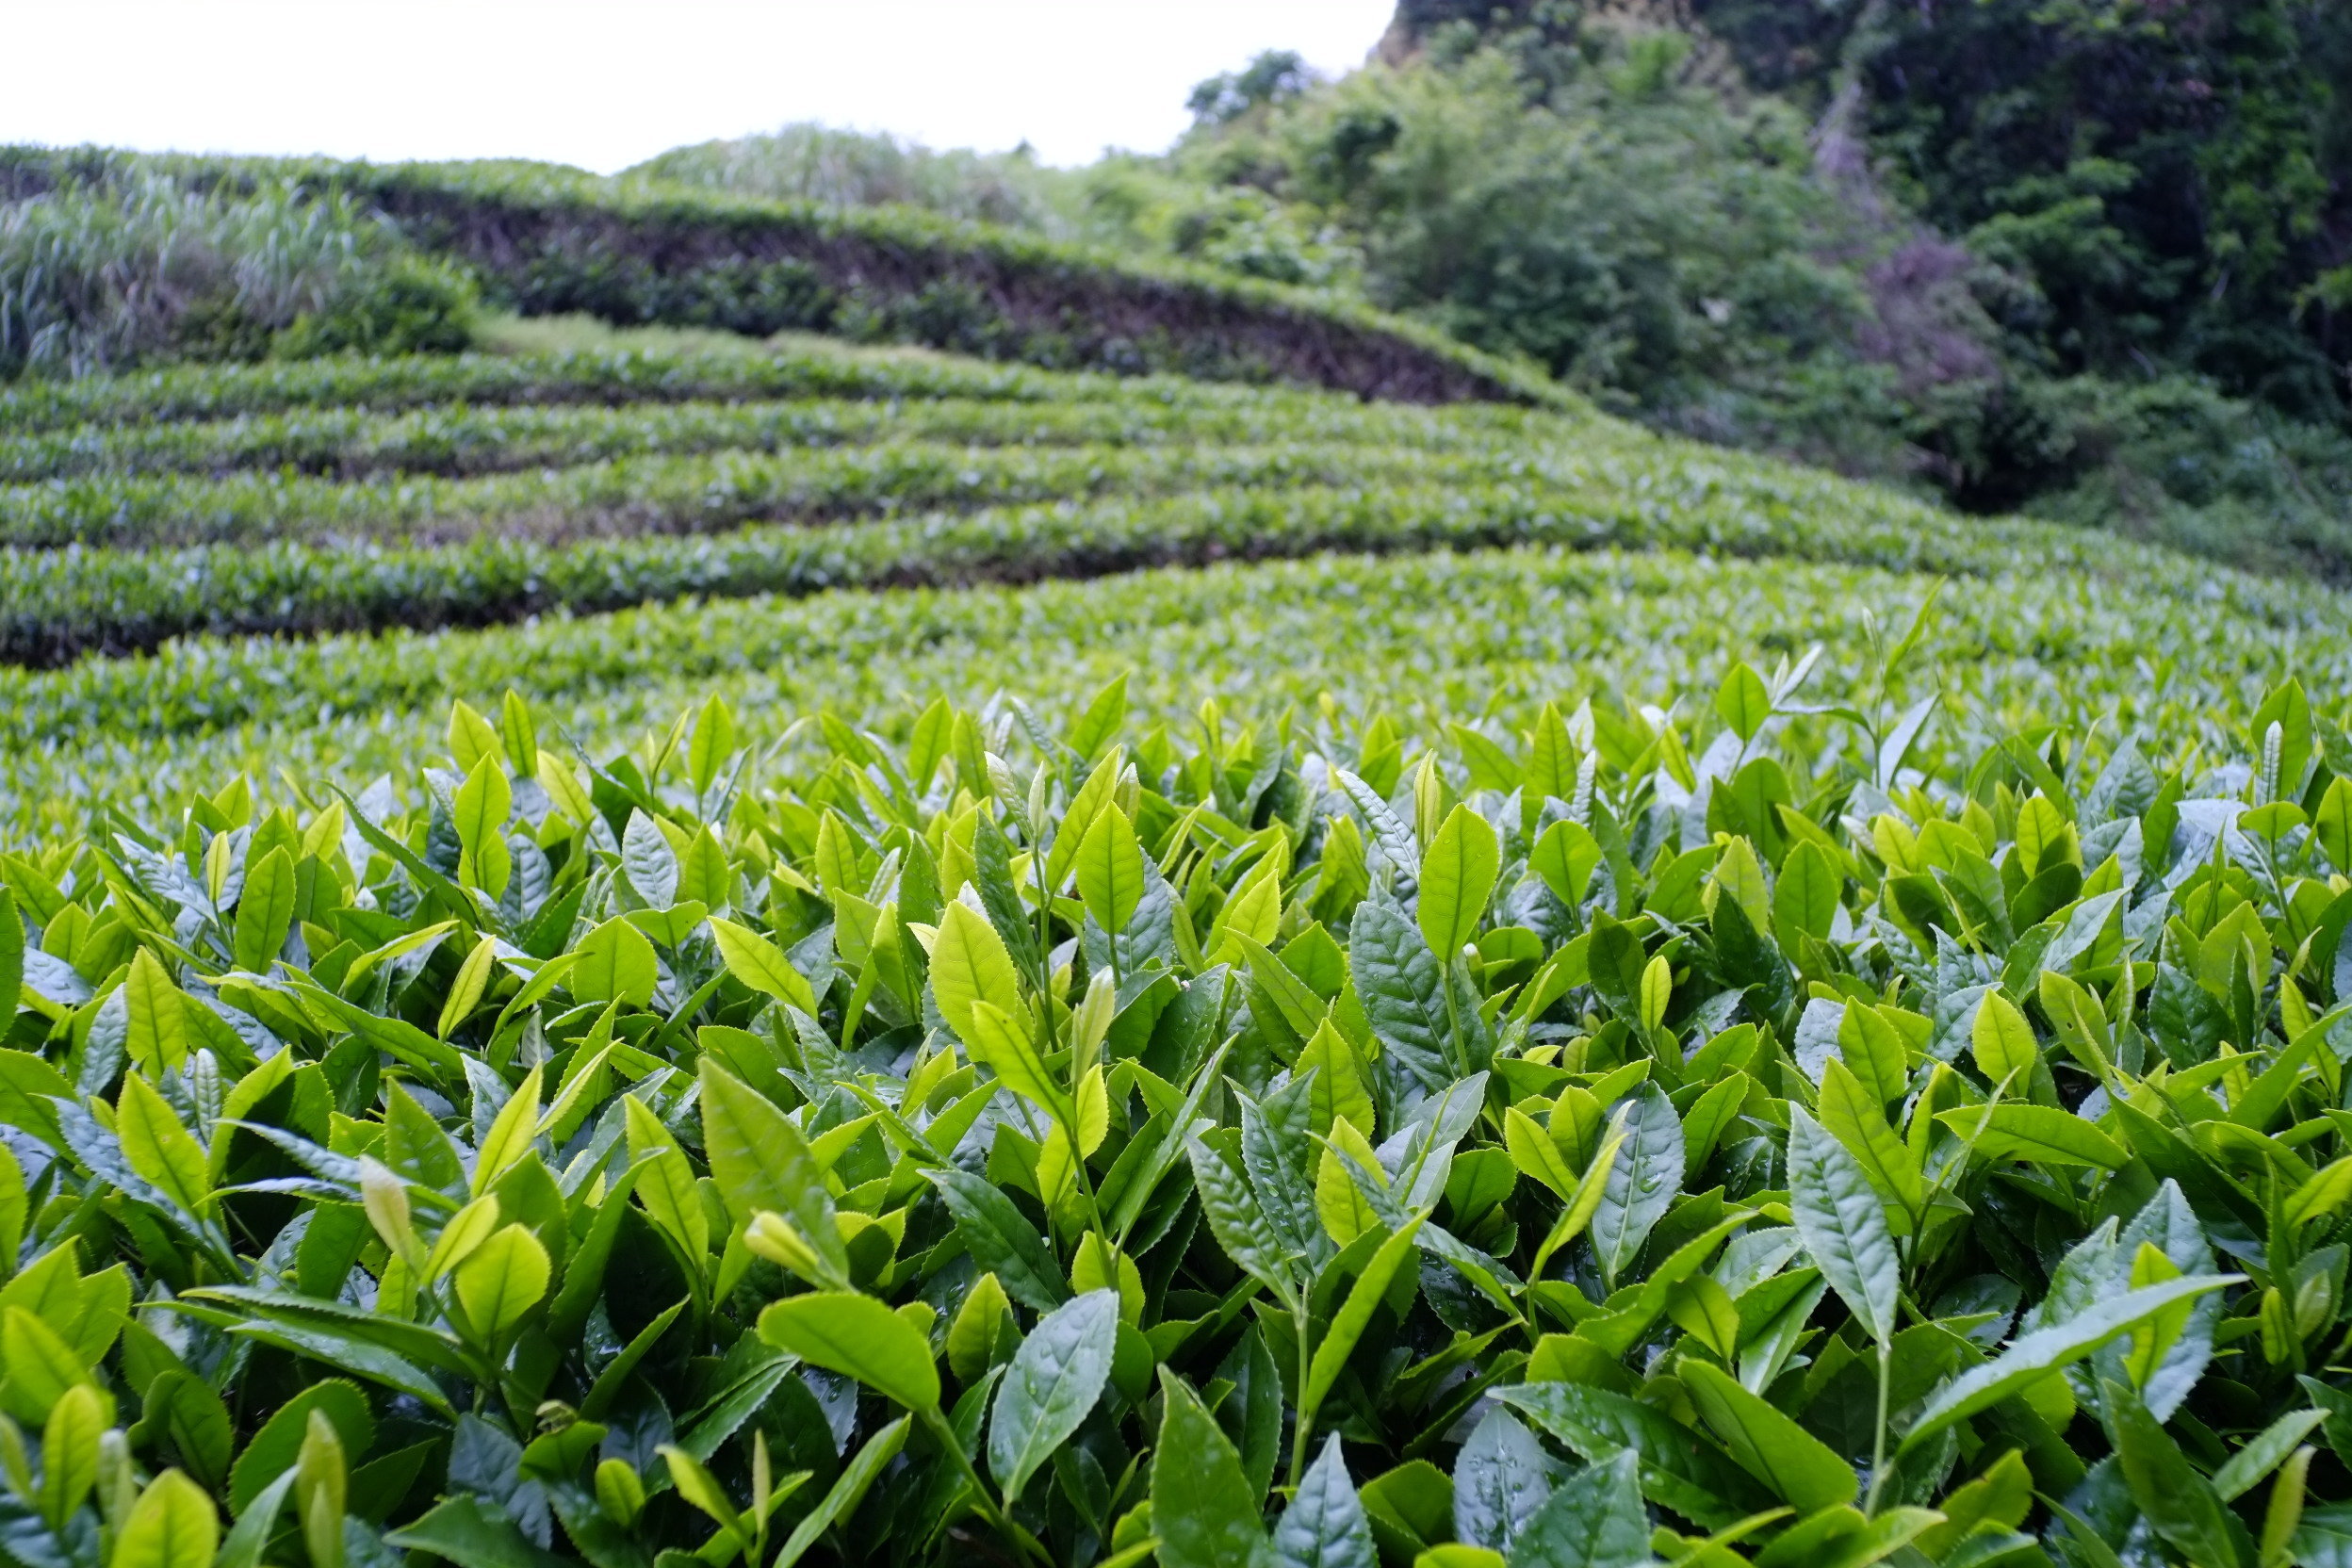 خرید برگ سبز چای از مرز 17 هزار تن گذشت